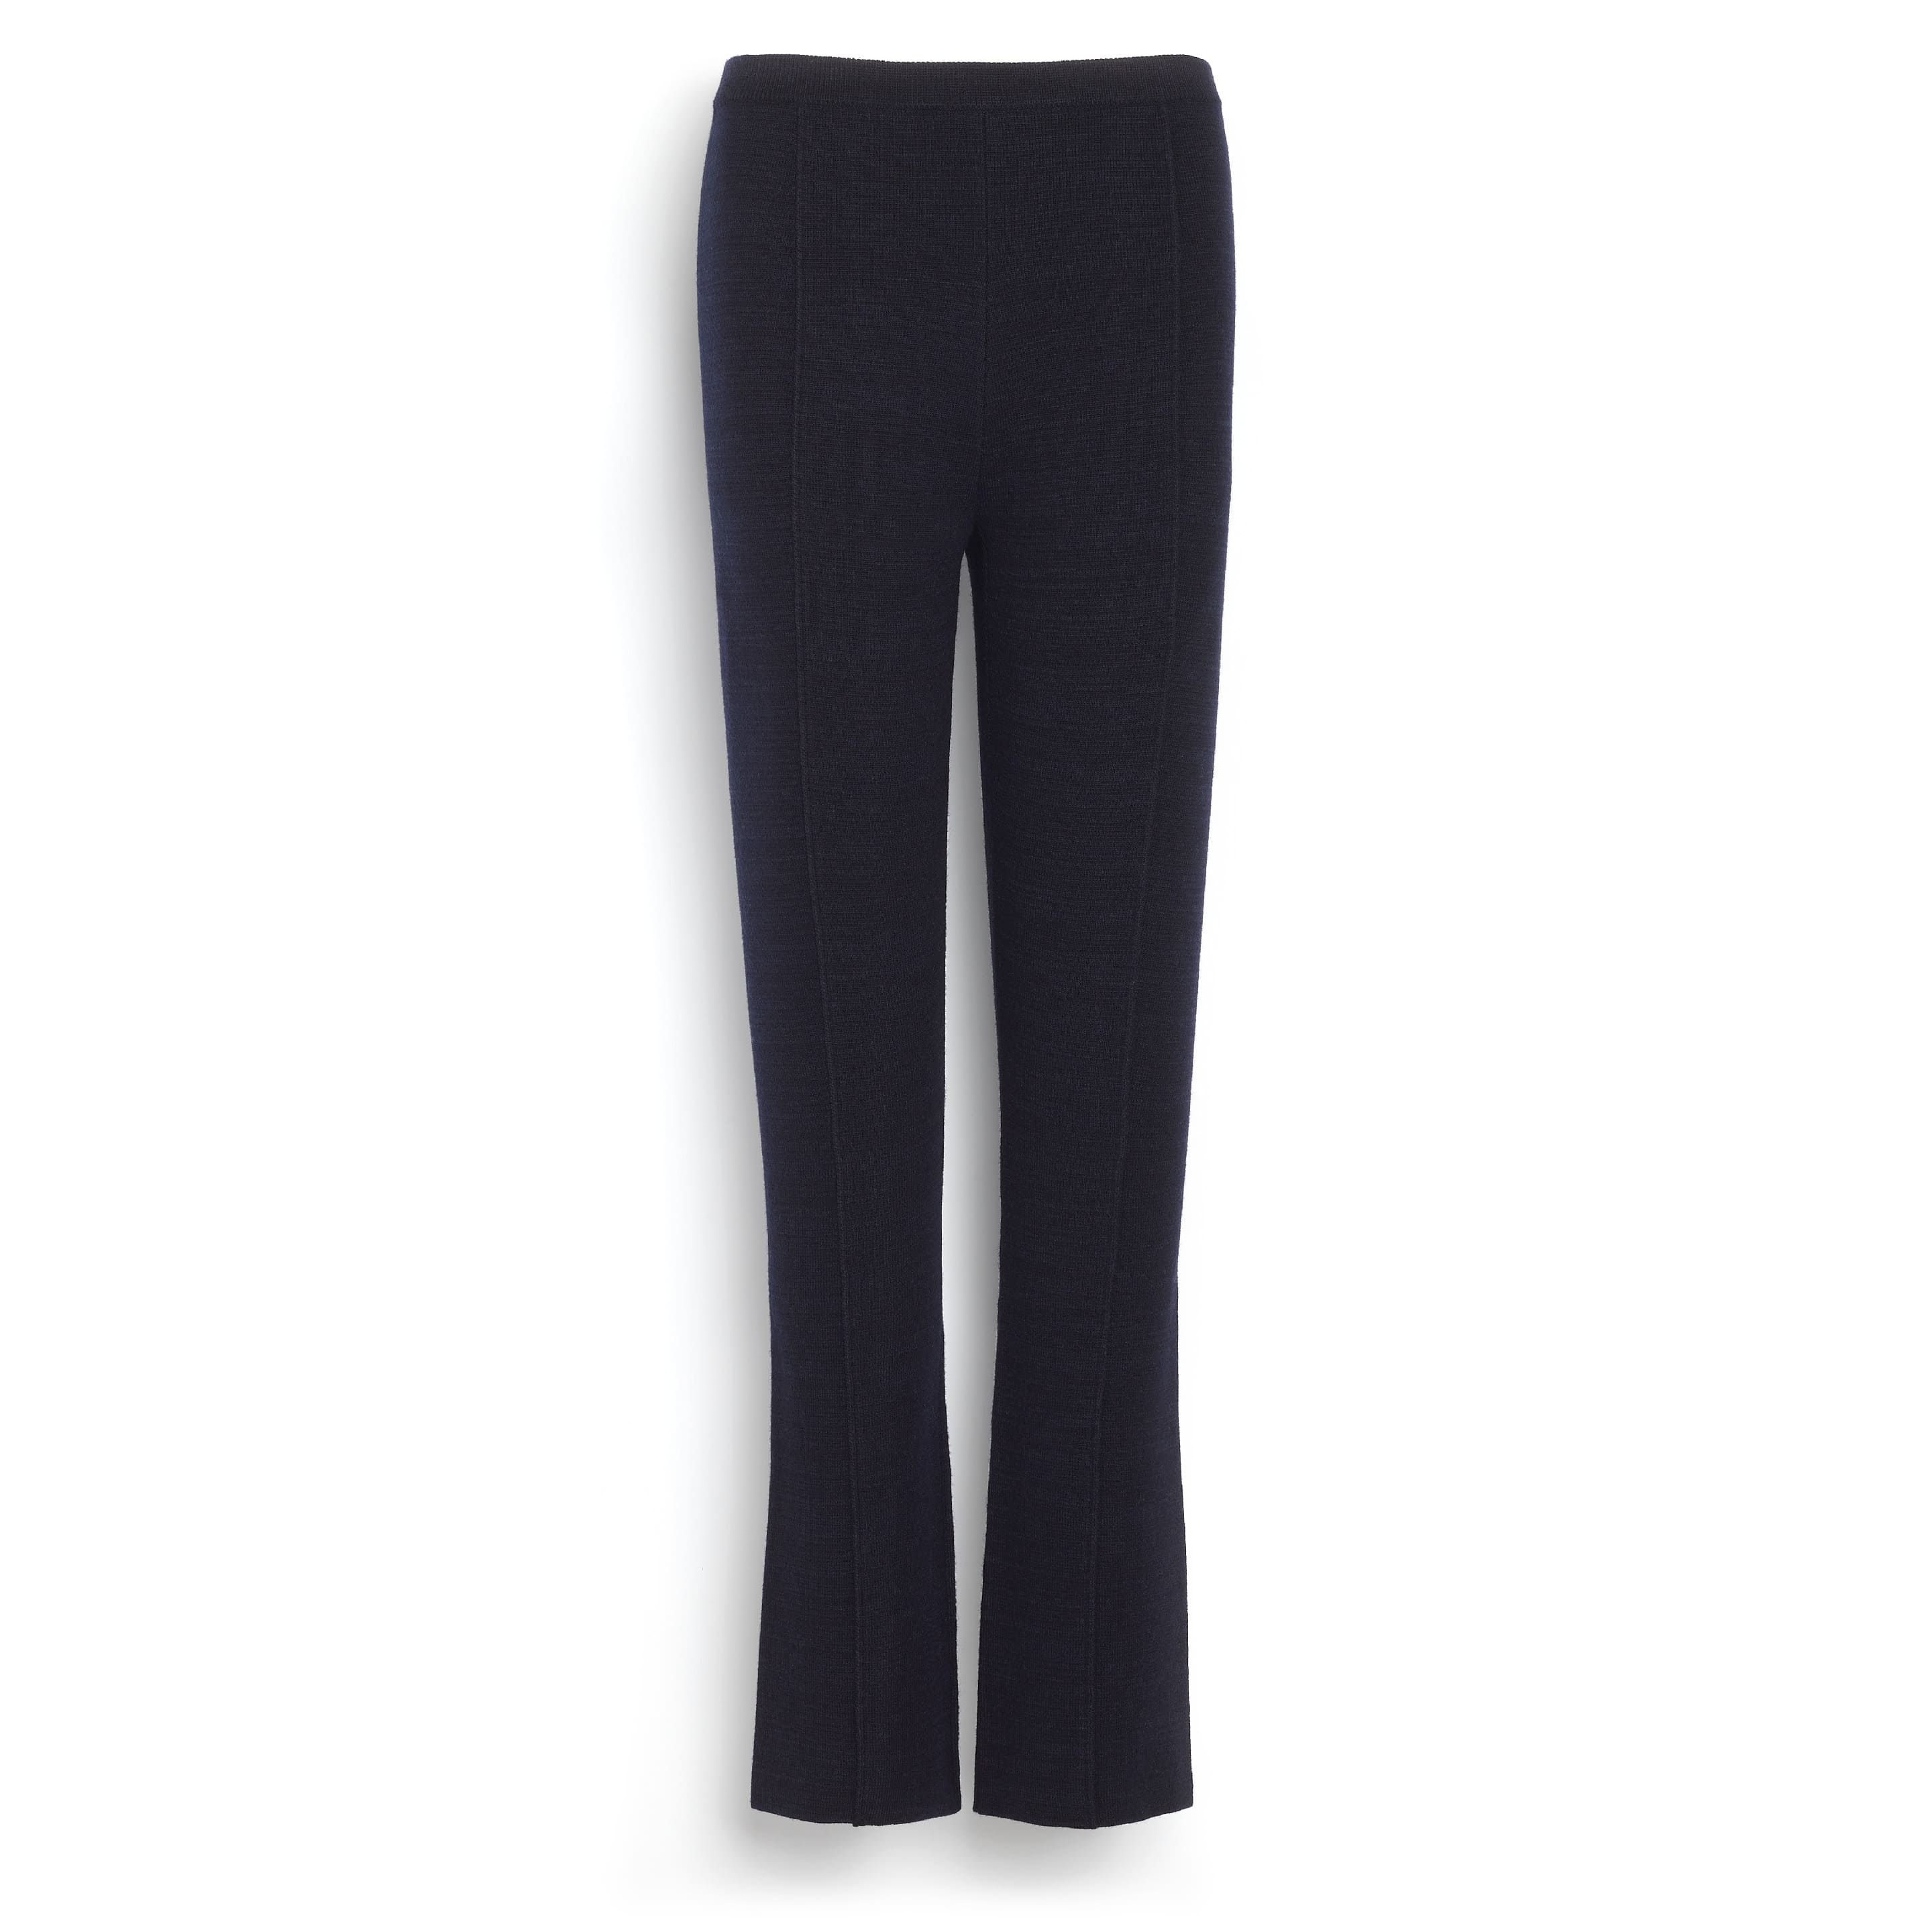 YWDJ Capri Leggings for Women Women Print Warm Winter Tight Thick Velvet Wool  Pants Trousers Leggings Gray XS 